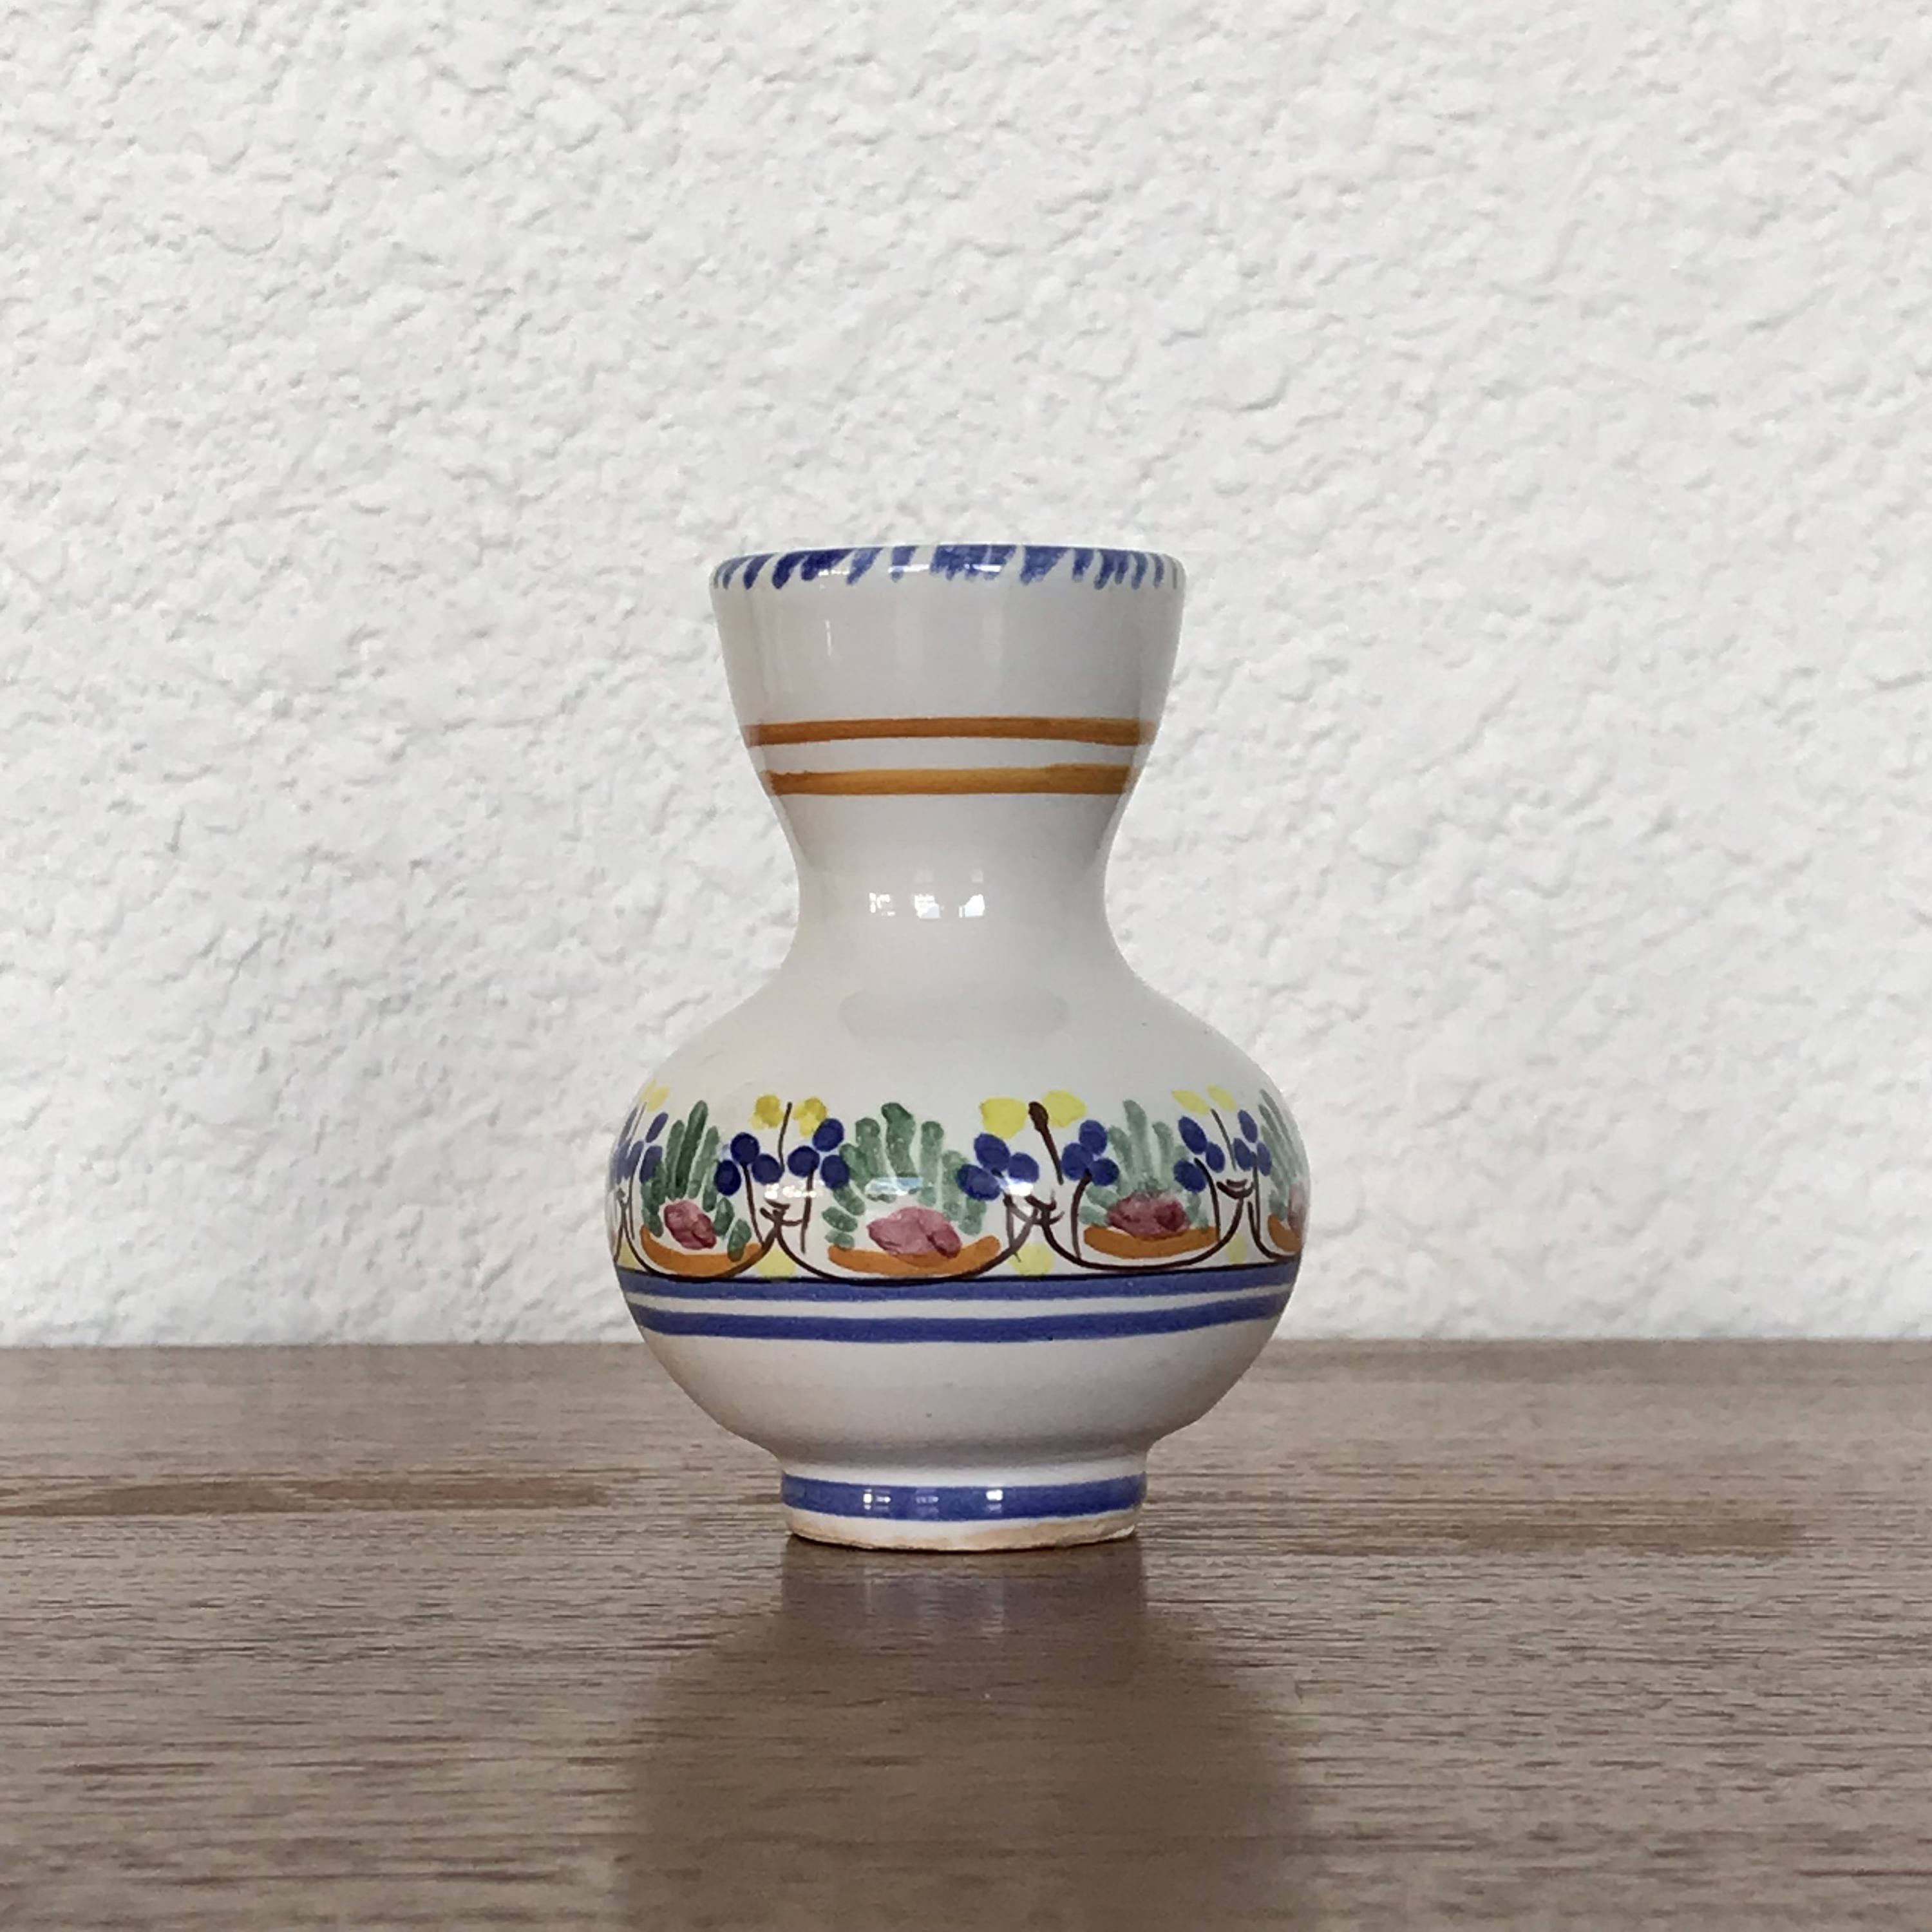 12 Lovely Royal Haeger Vase 2024 free download royal haeger vase of vintage ceramic bud vase hand painted in spain etsy intended for image 0